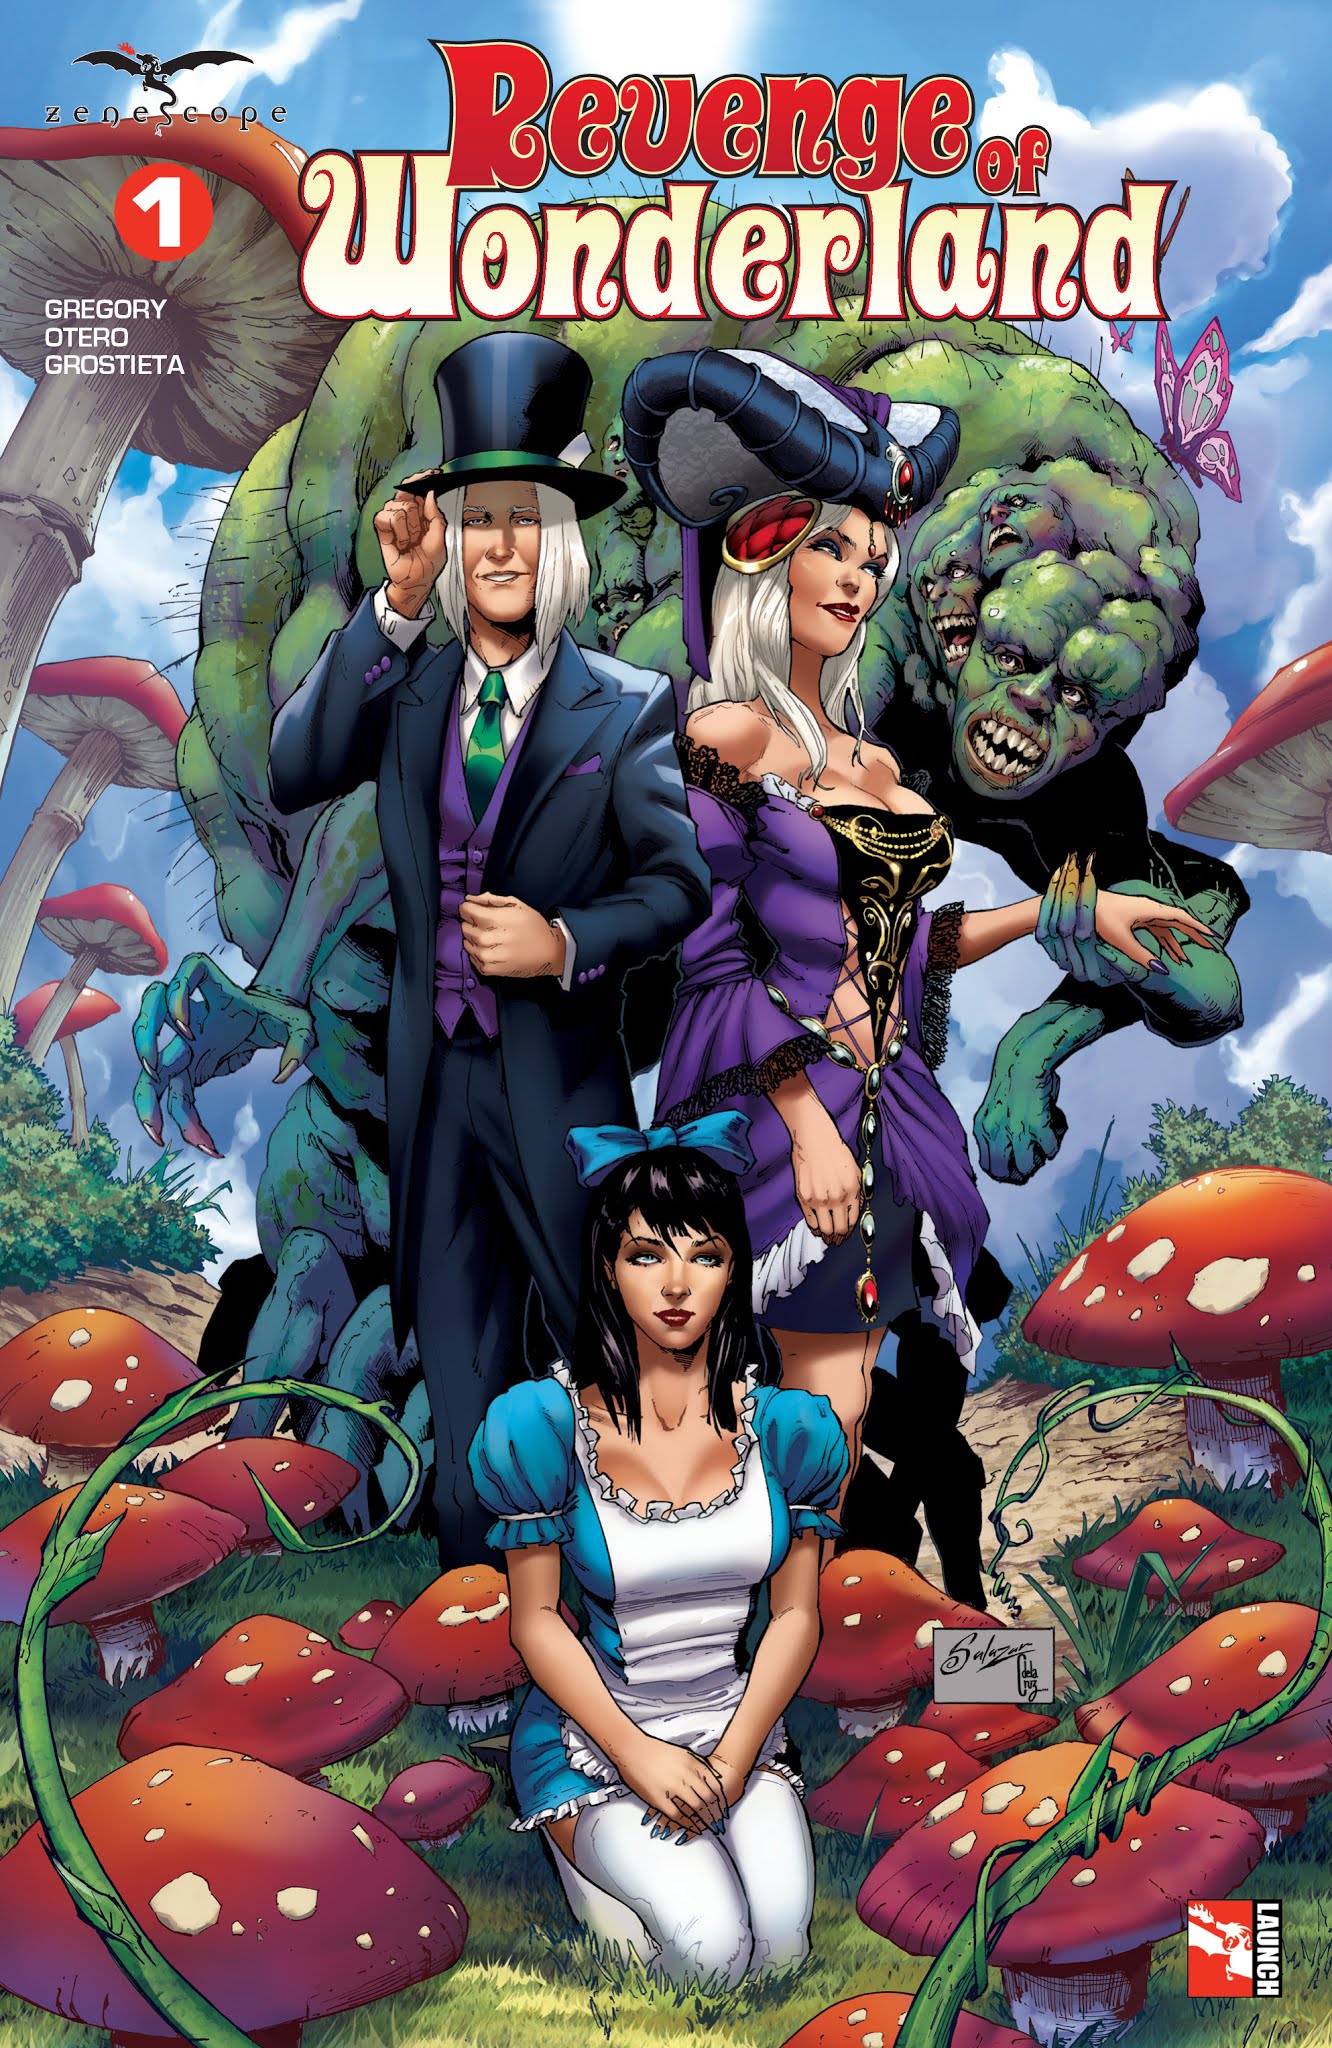 Read online Revenge of Wonderland comic -  Issue #1 - 1